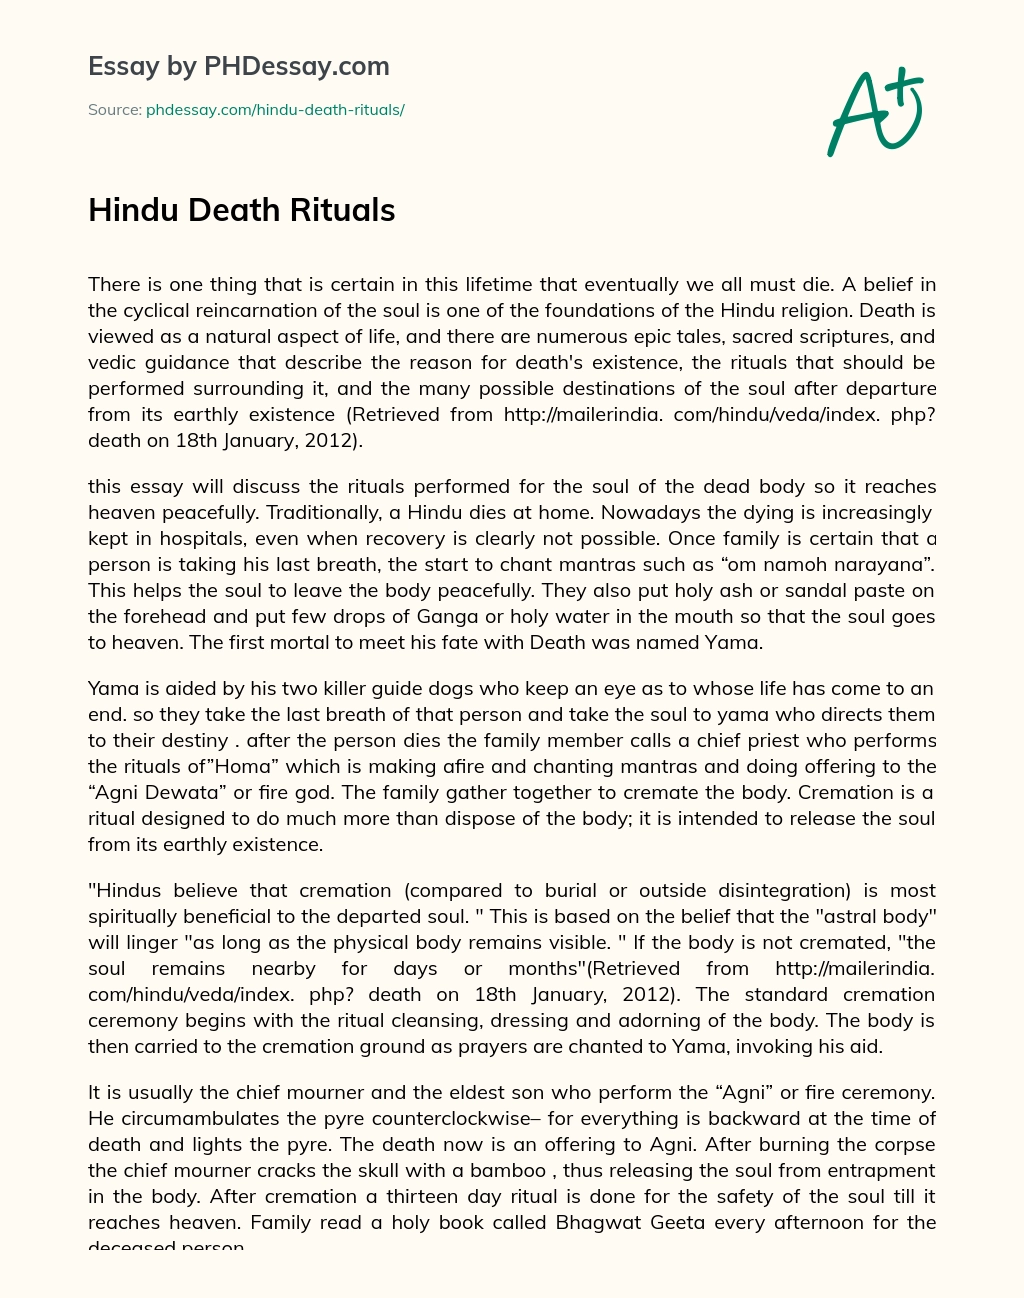 Hindu Death Rituals essay